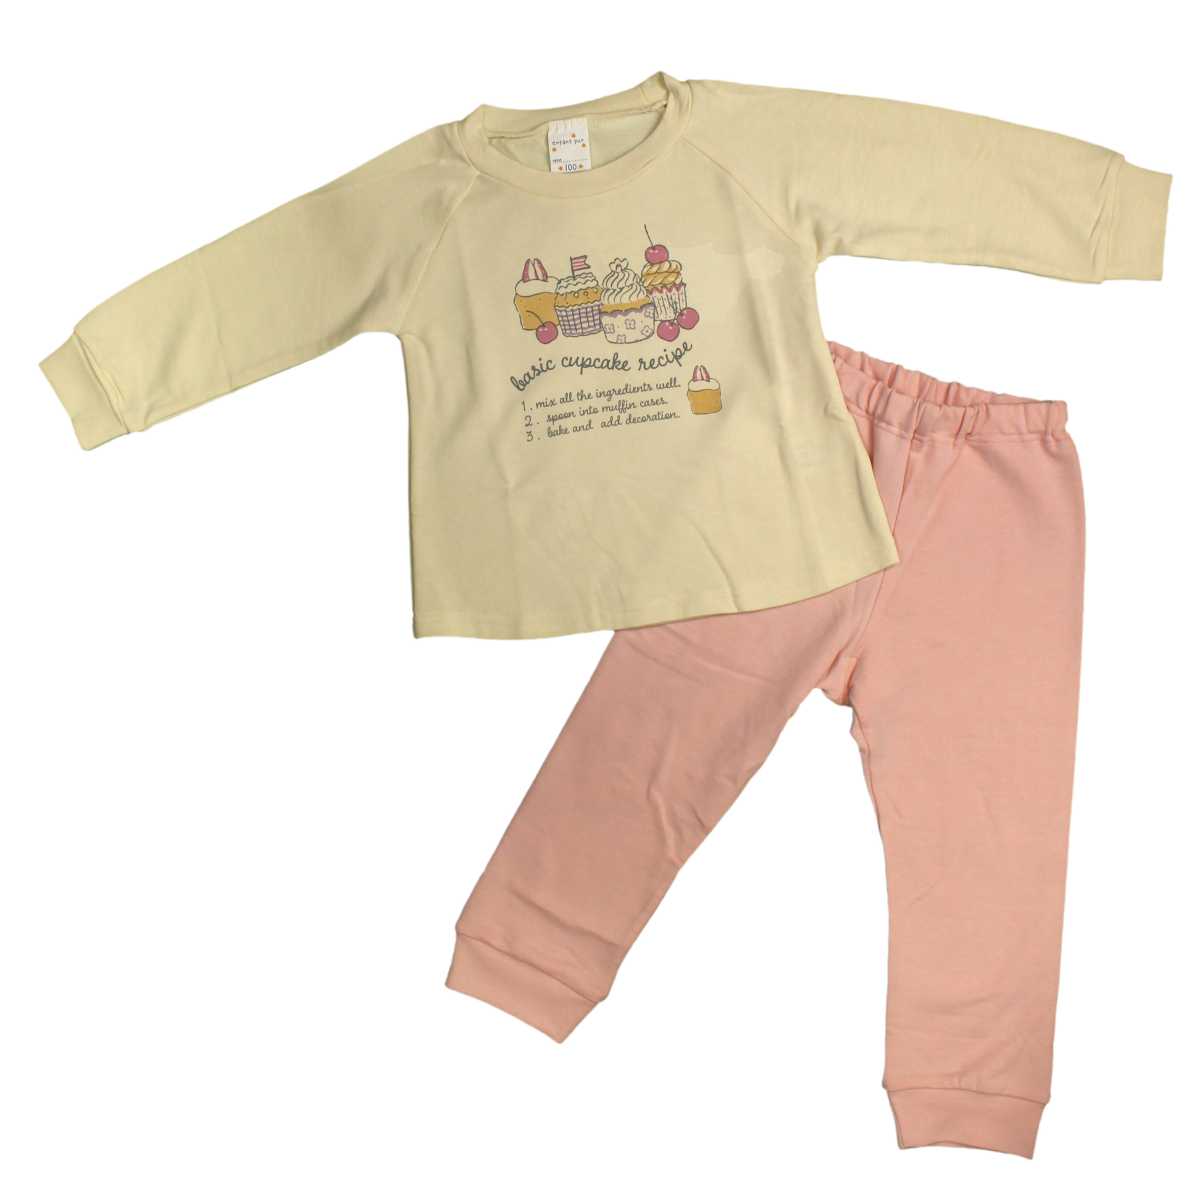 ガールズ  キッズ  パジャマ[enfant pur]女の子 パジャマ 長袖パジャマ 上下セット スイーツ柄 寝間着 裏毛パジャマ